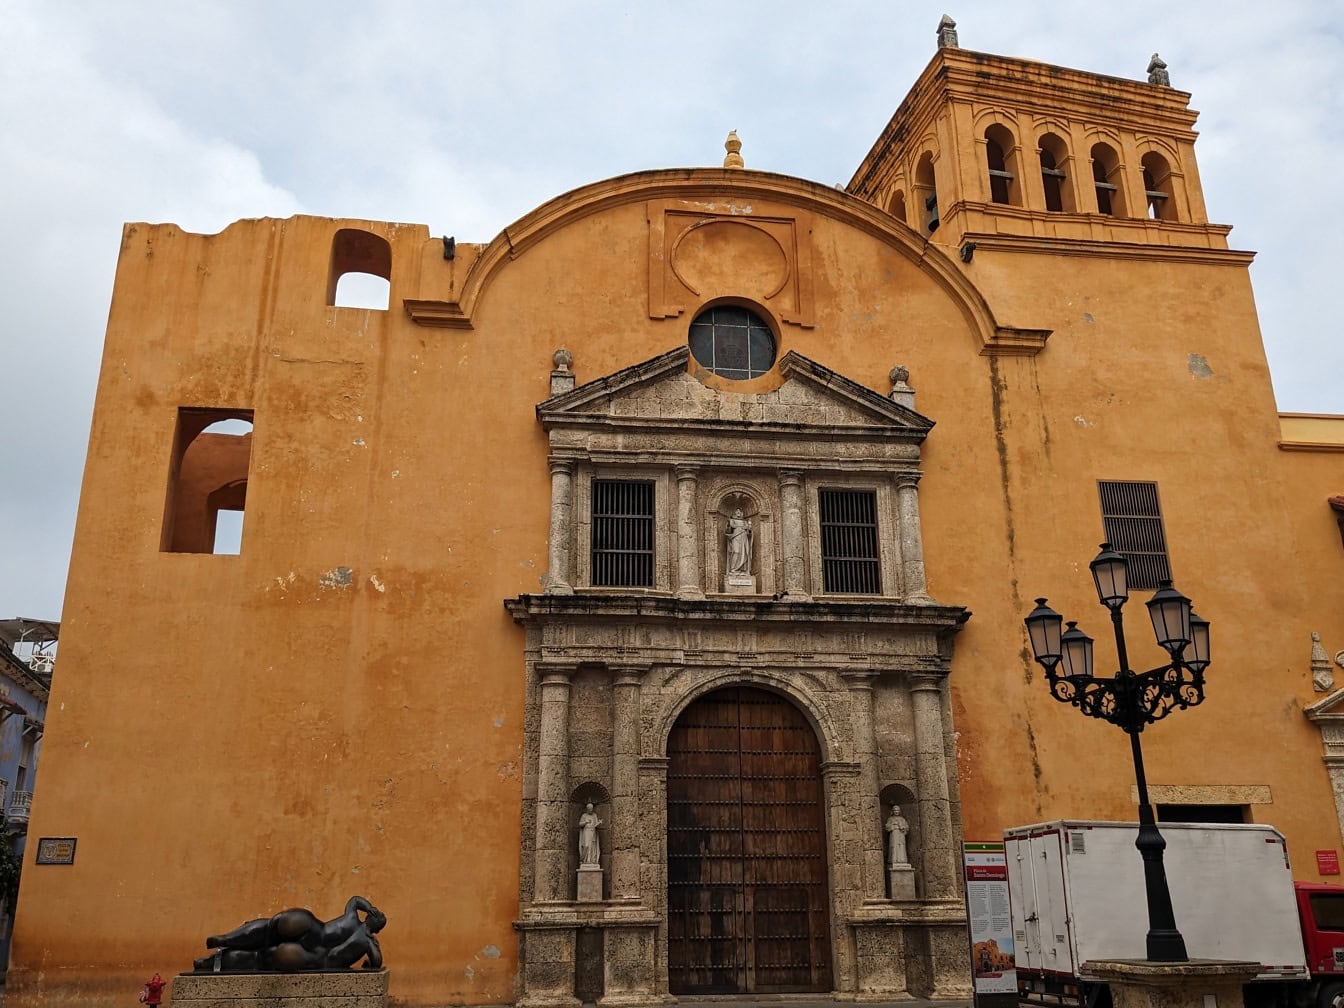 Kirke og kloster i Santo Domingo kjent som kirken San Daniel i byen Cartagena de Indias i Columbia, Sør-Amerika